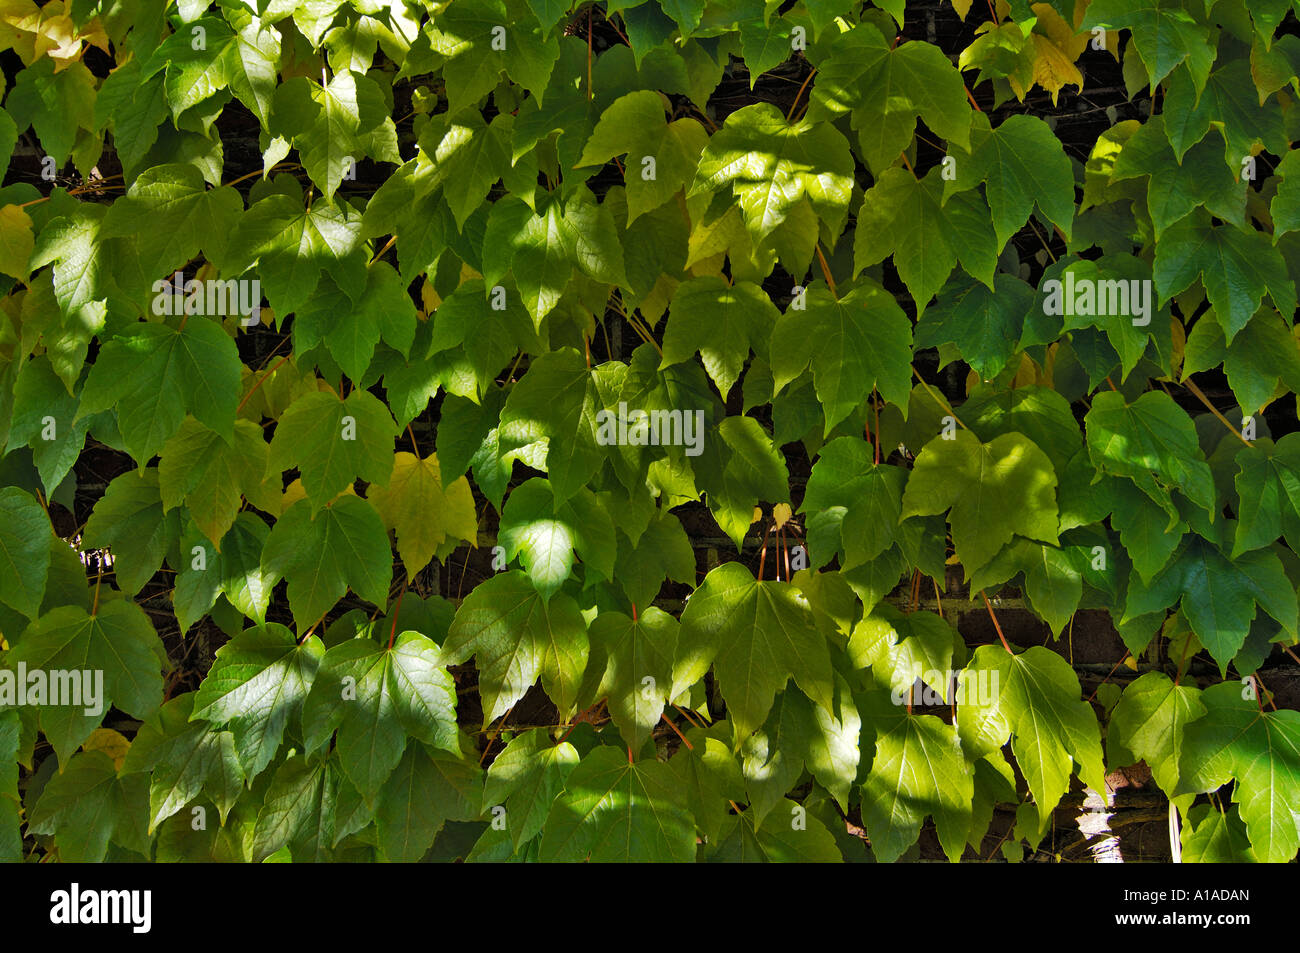 Five-leaved ivy (Parthenocissus quinquefolia) Stock Photo